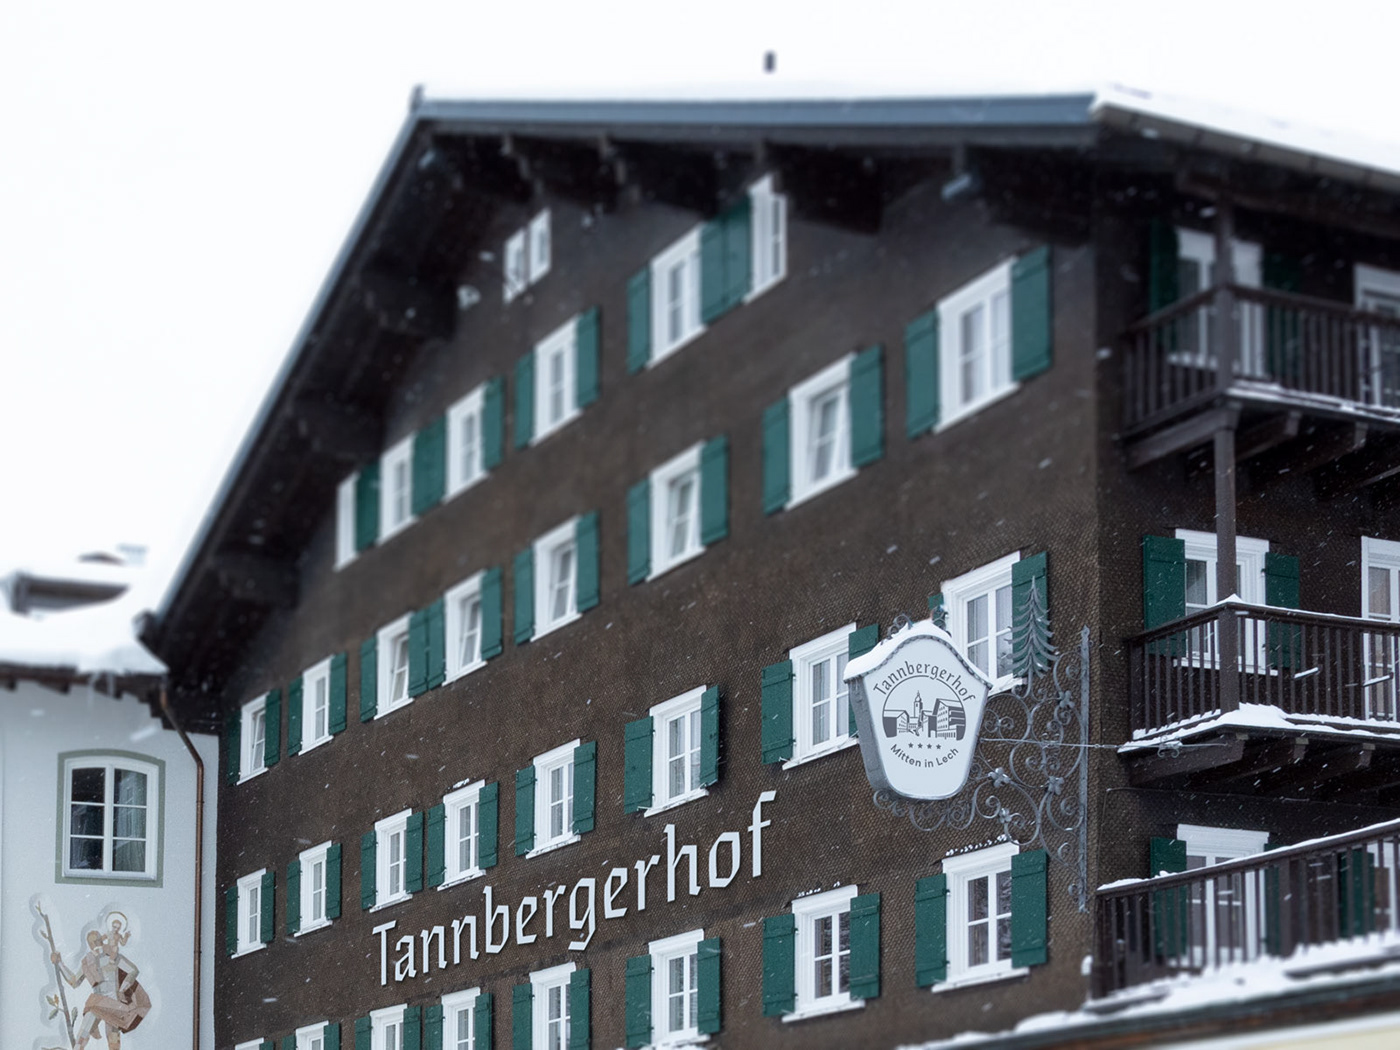 arlberg branding  corporatedesign Fraktur hotel hotelbranding Icon lech tannberg graphicdesign